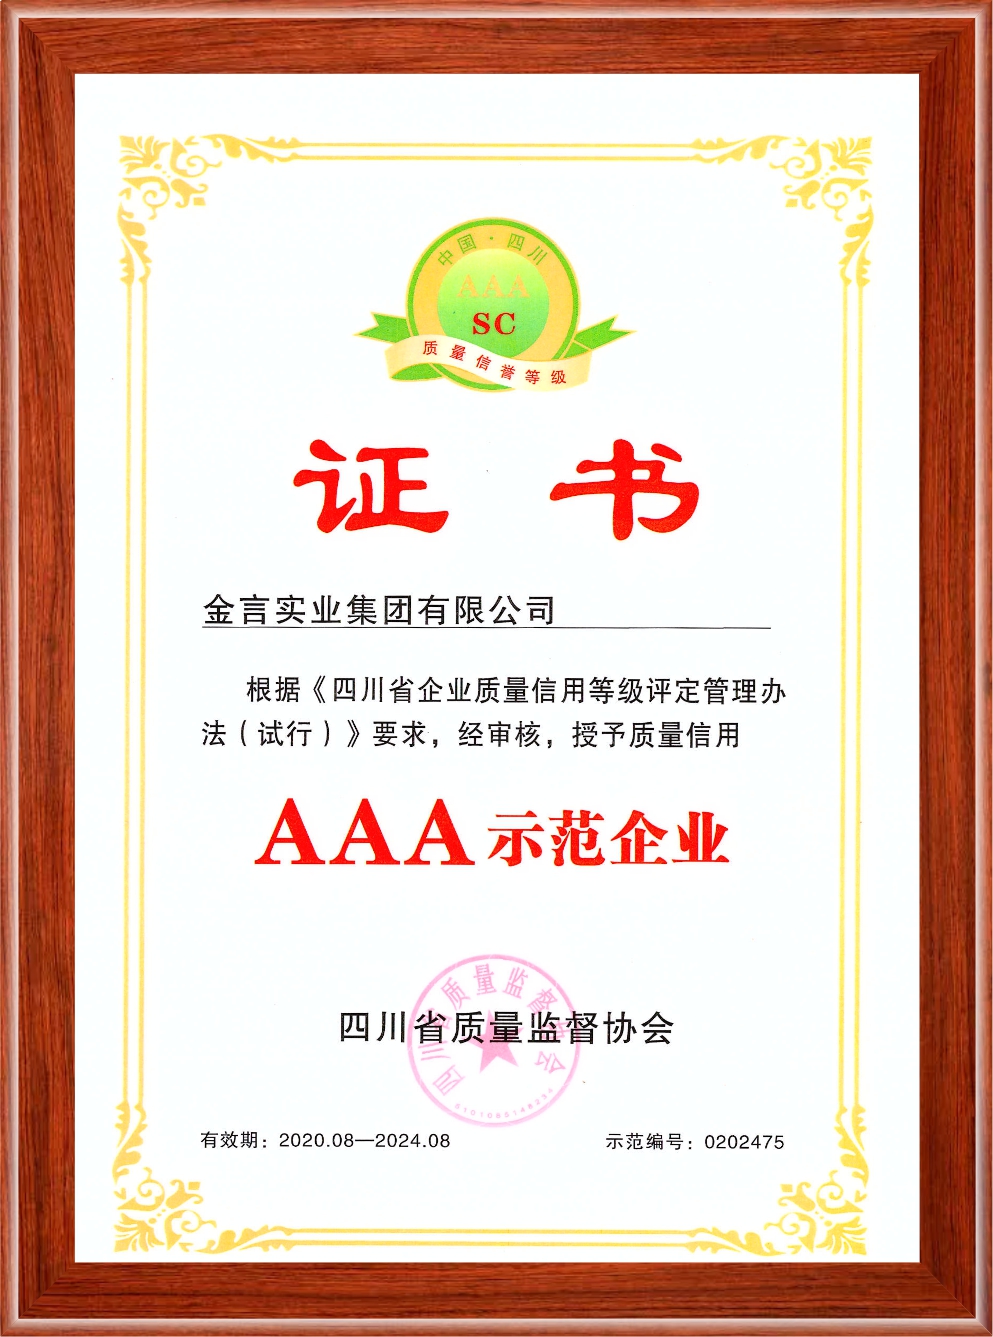 四川省企业质量信用AAA级示范企业